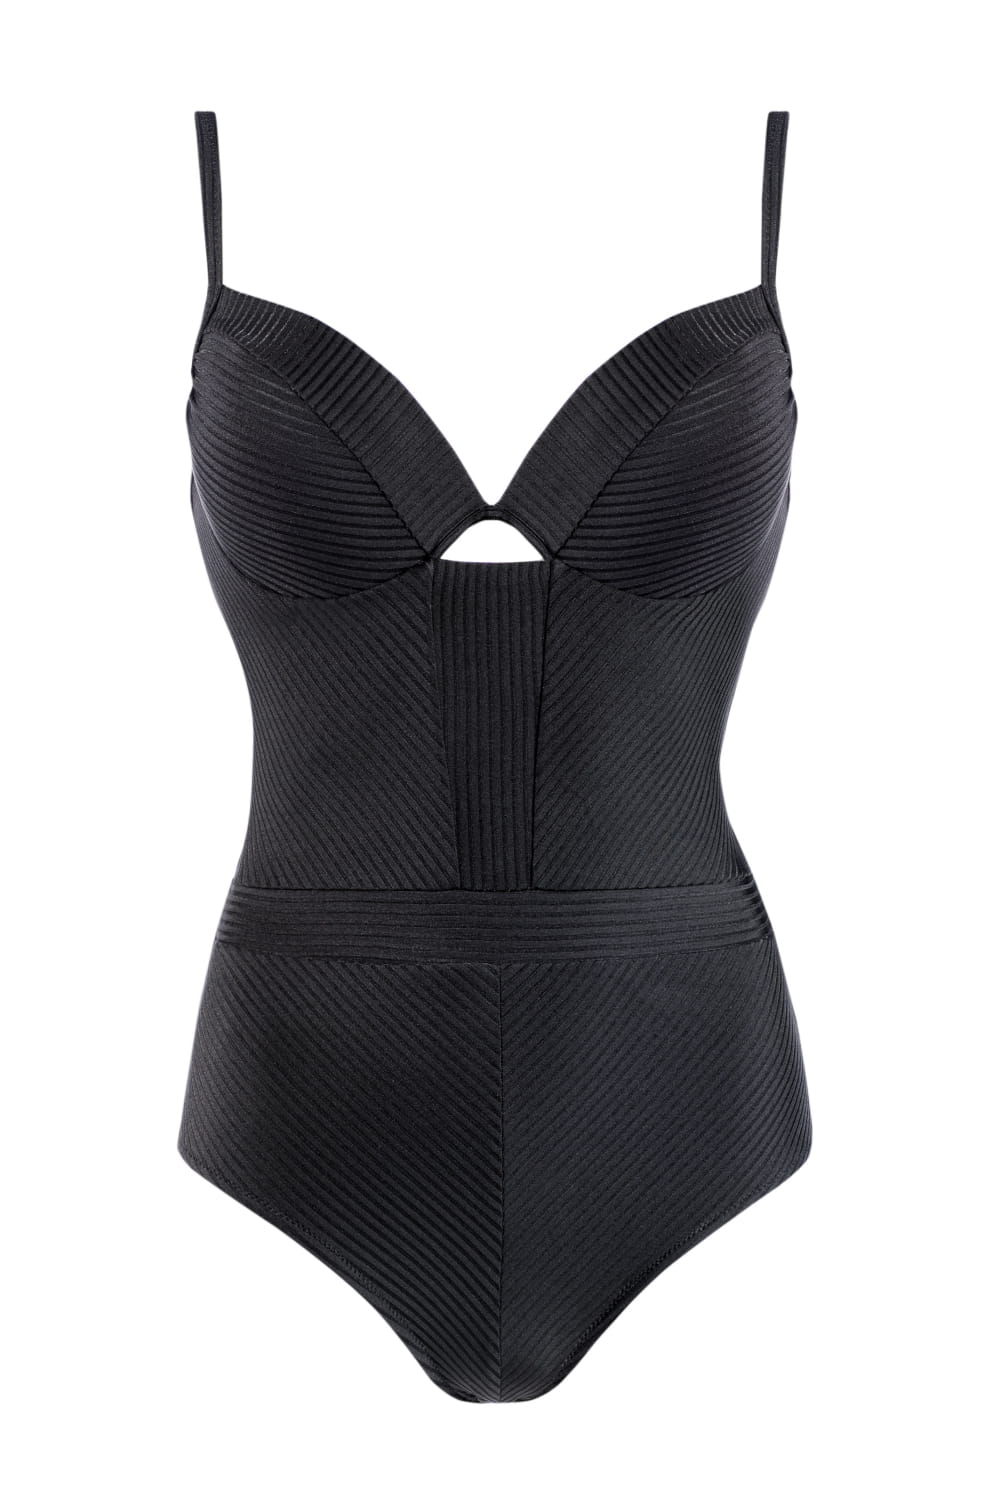 Axami Luxury Swimwear F28B Push-up Underwire One Piece Bikini Body Black